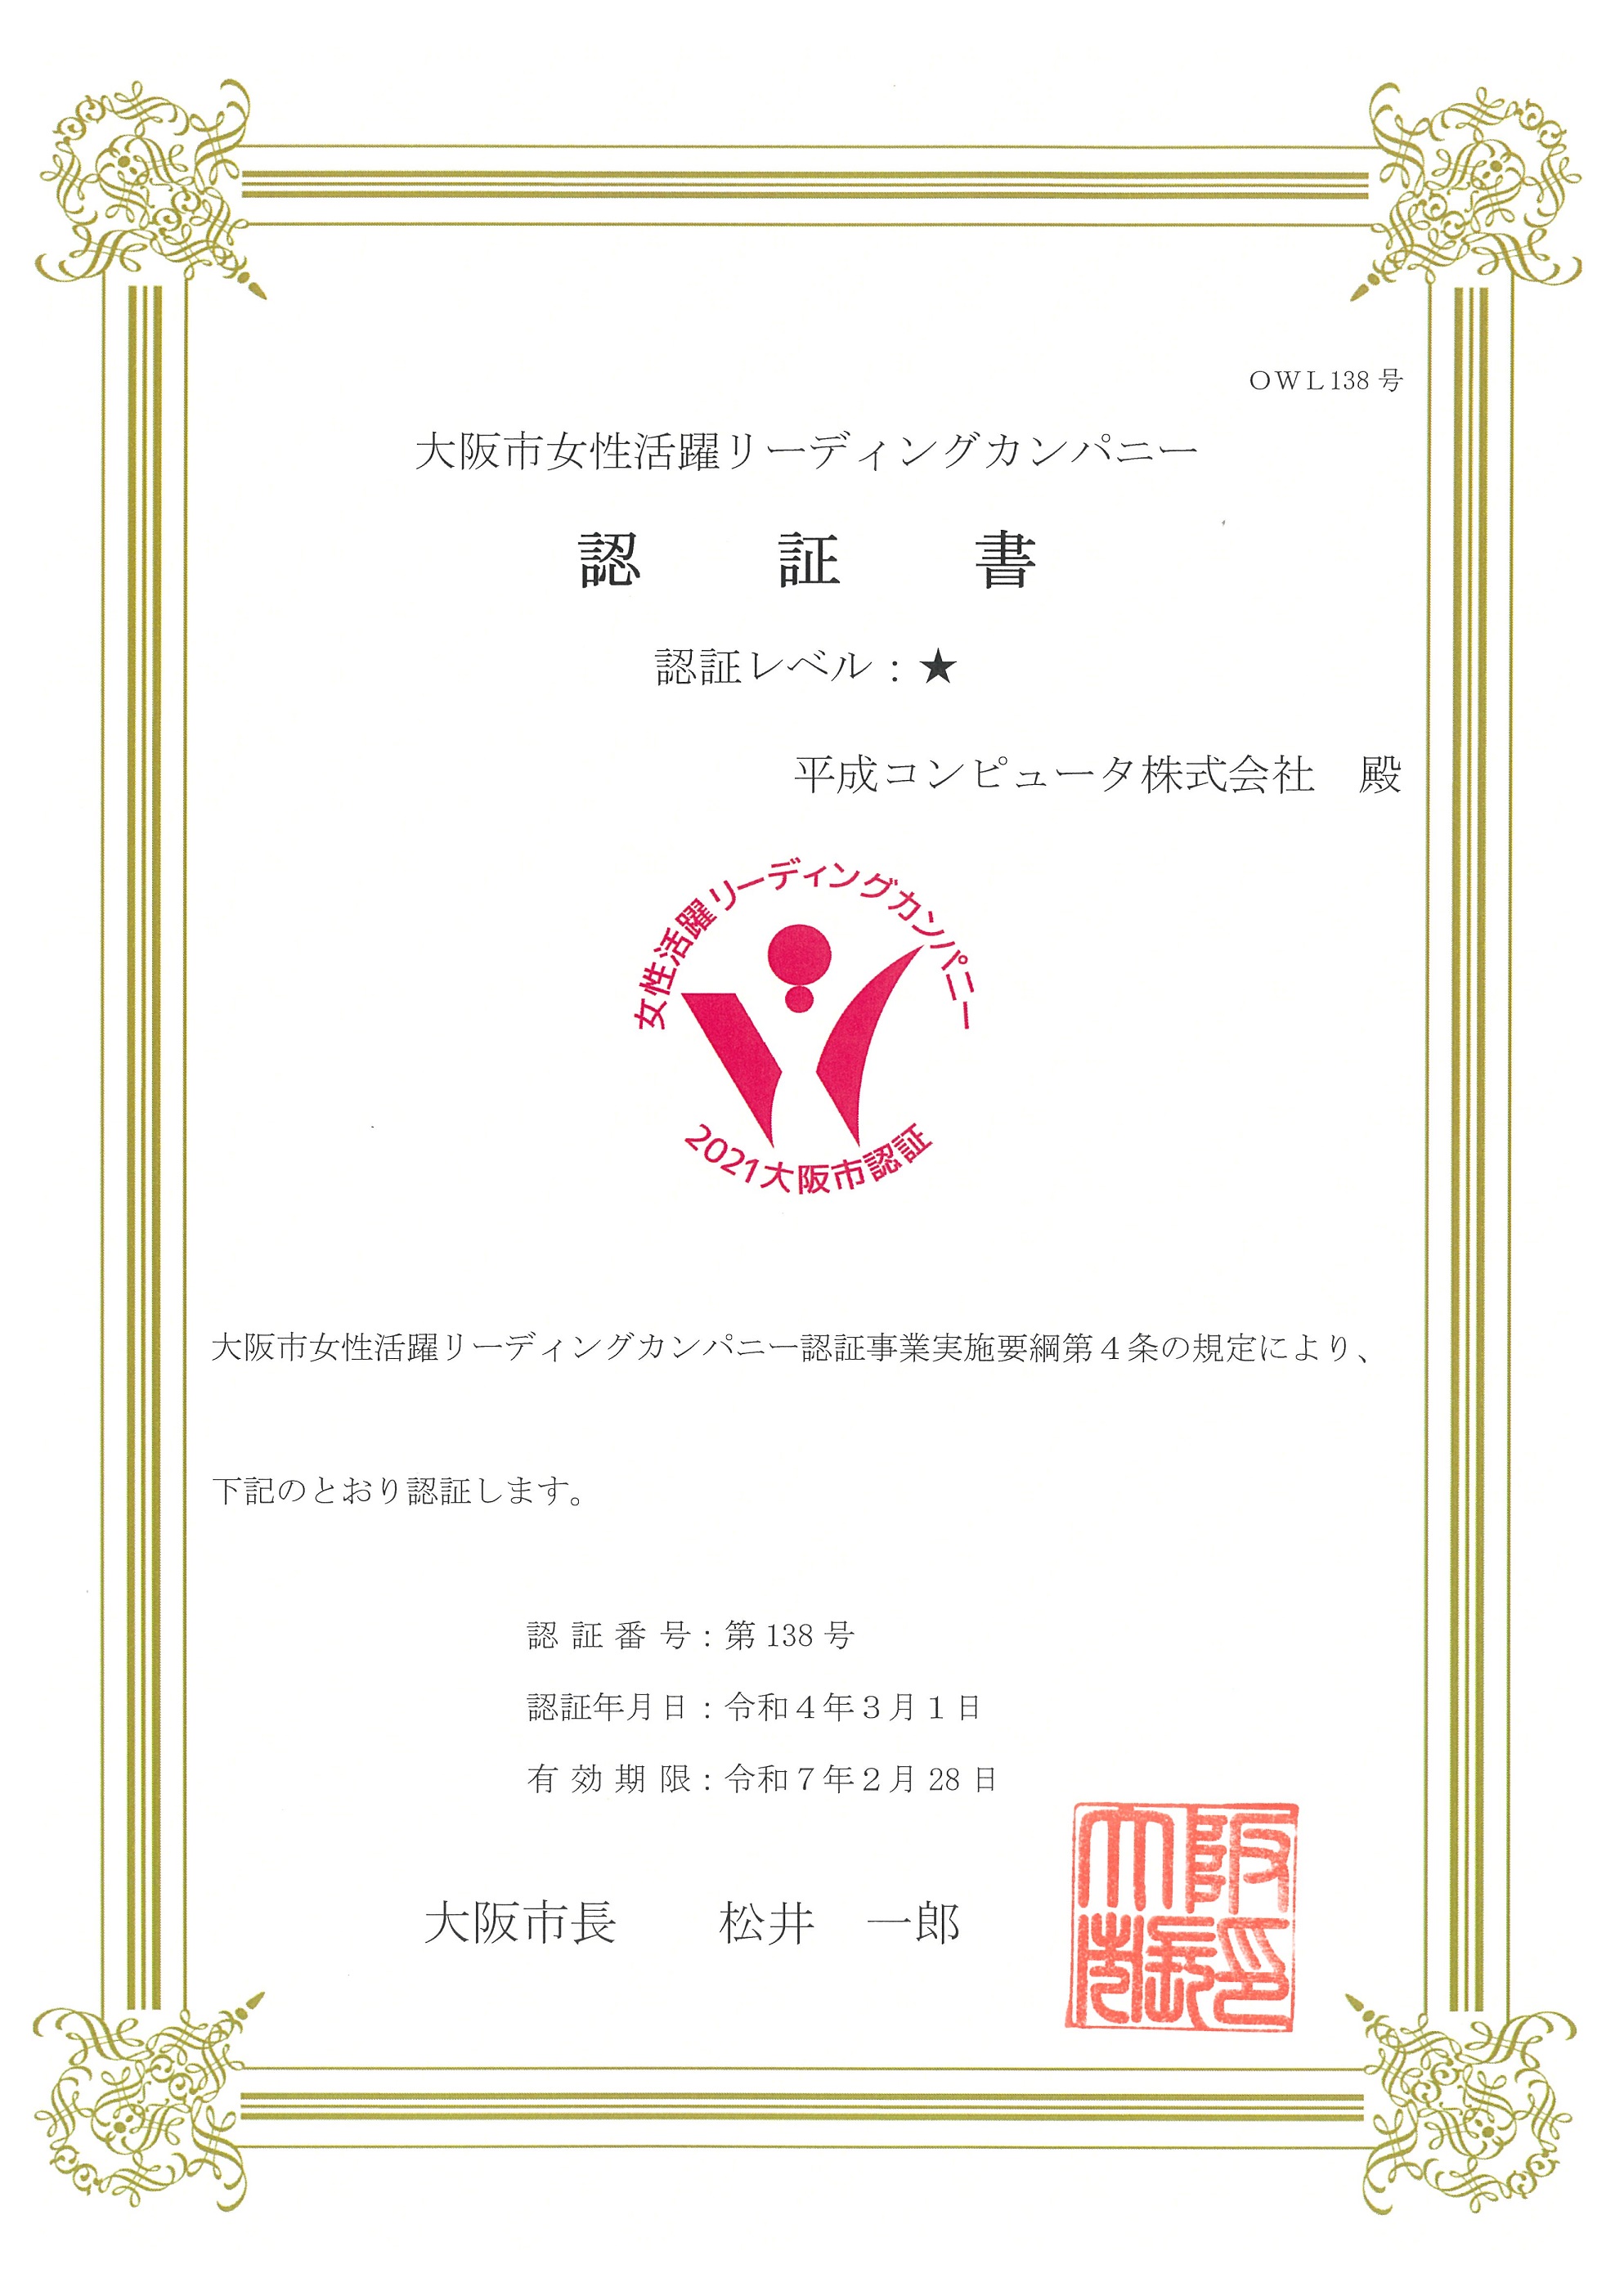 大阪市女性活躍リーディングカンパニーの認証書